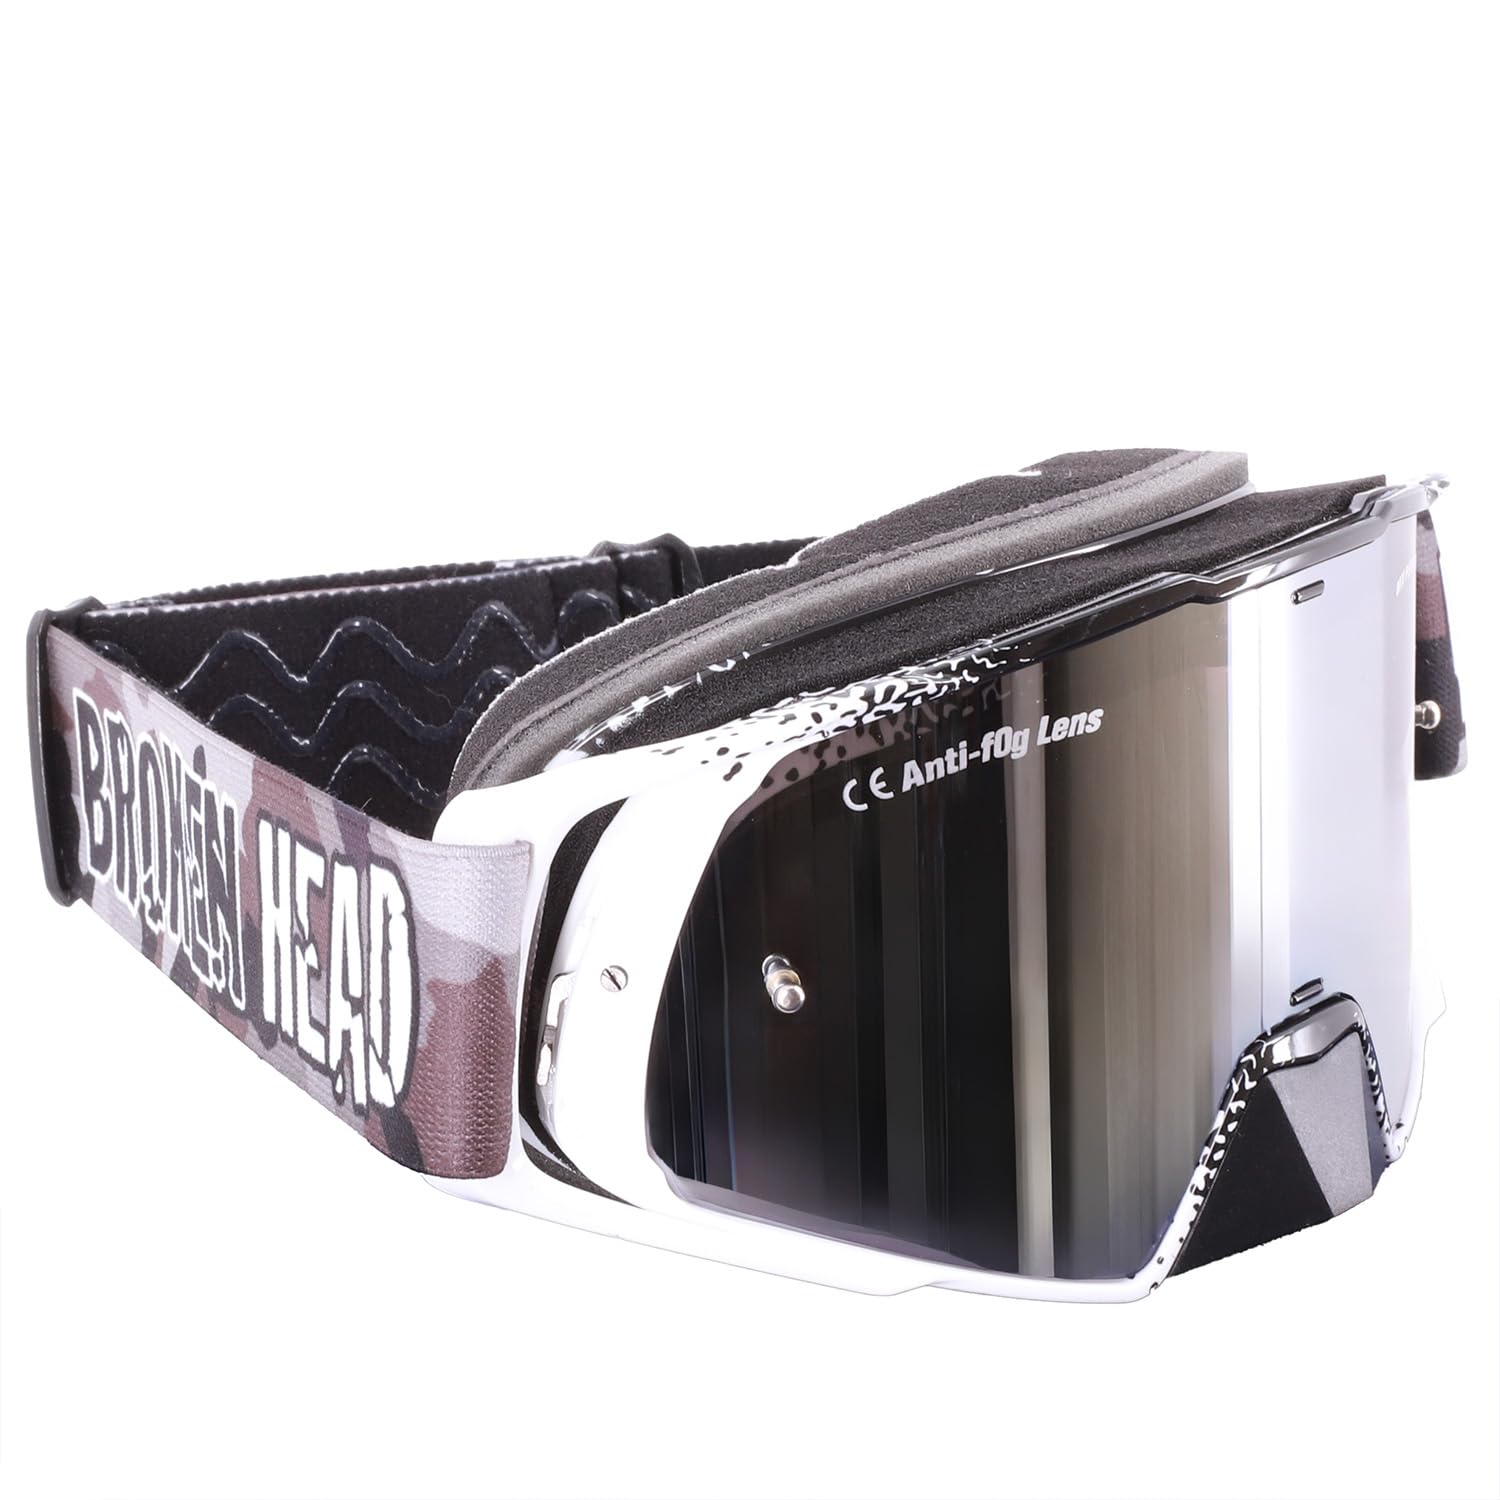 Broken Head Regulator MX Google Schwarz-Weiß mit verspiegeltem Glas - Motorrad-Brille Für Motocross, Enduro, Downhill, Offroad - Mit UV-Schutz